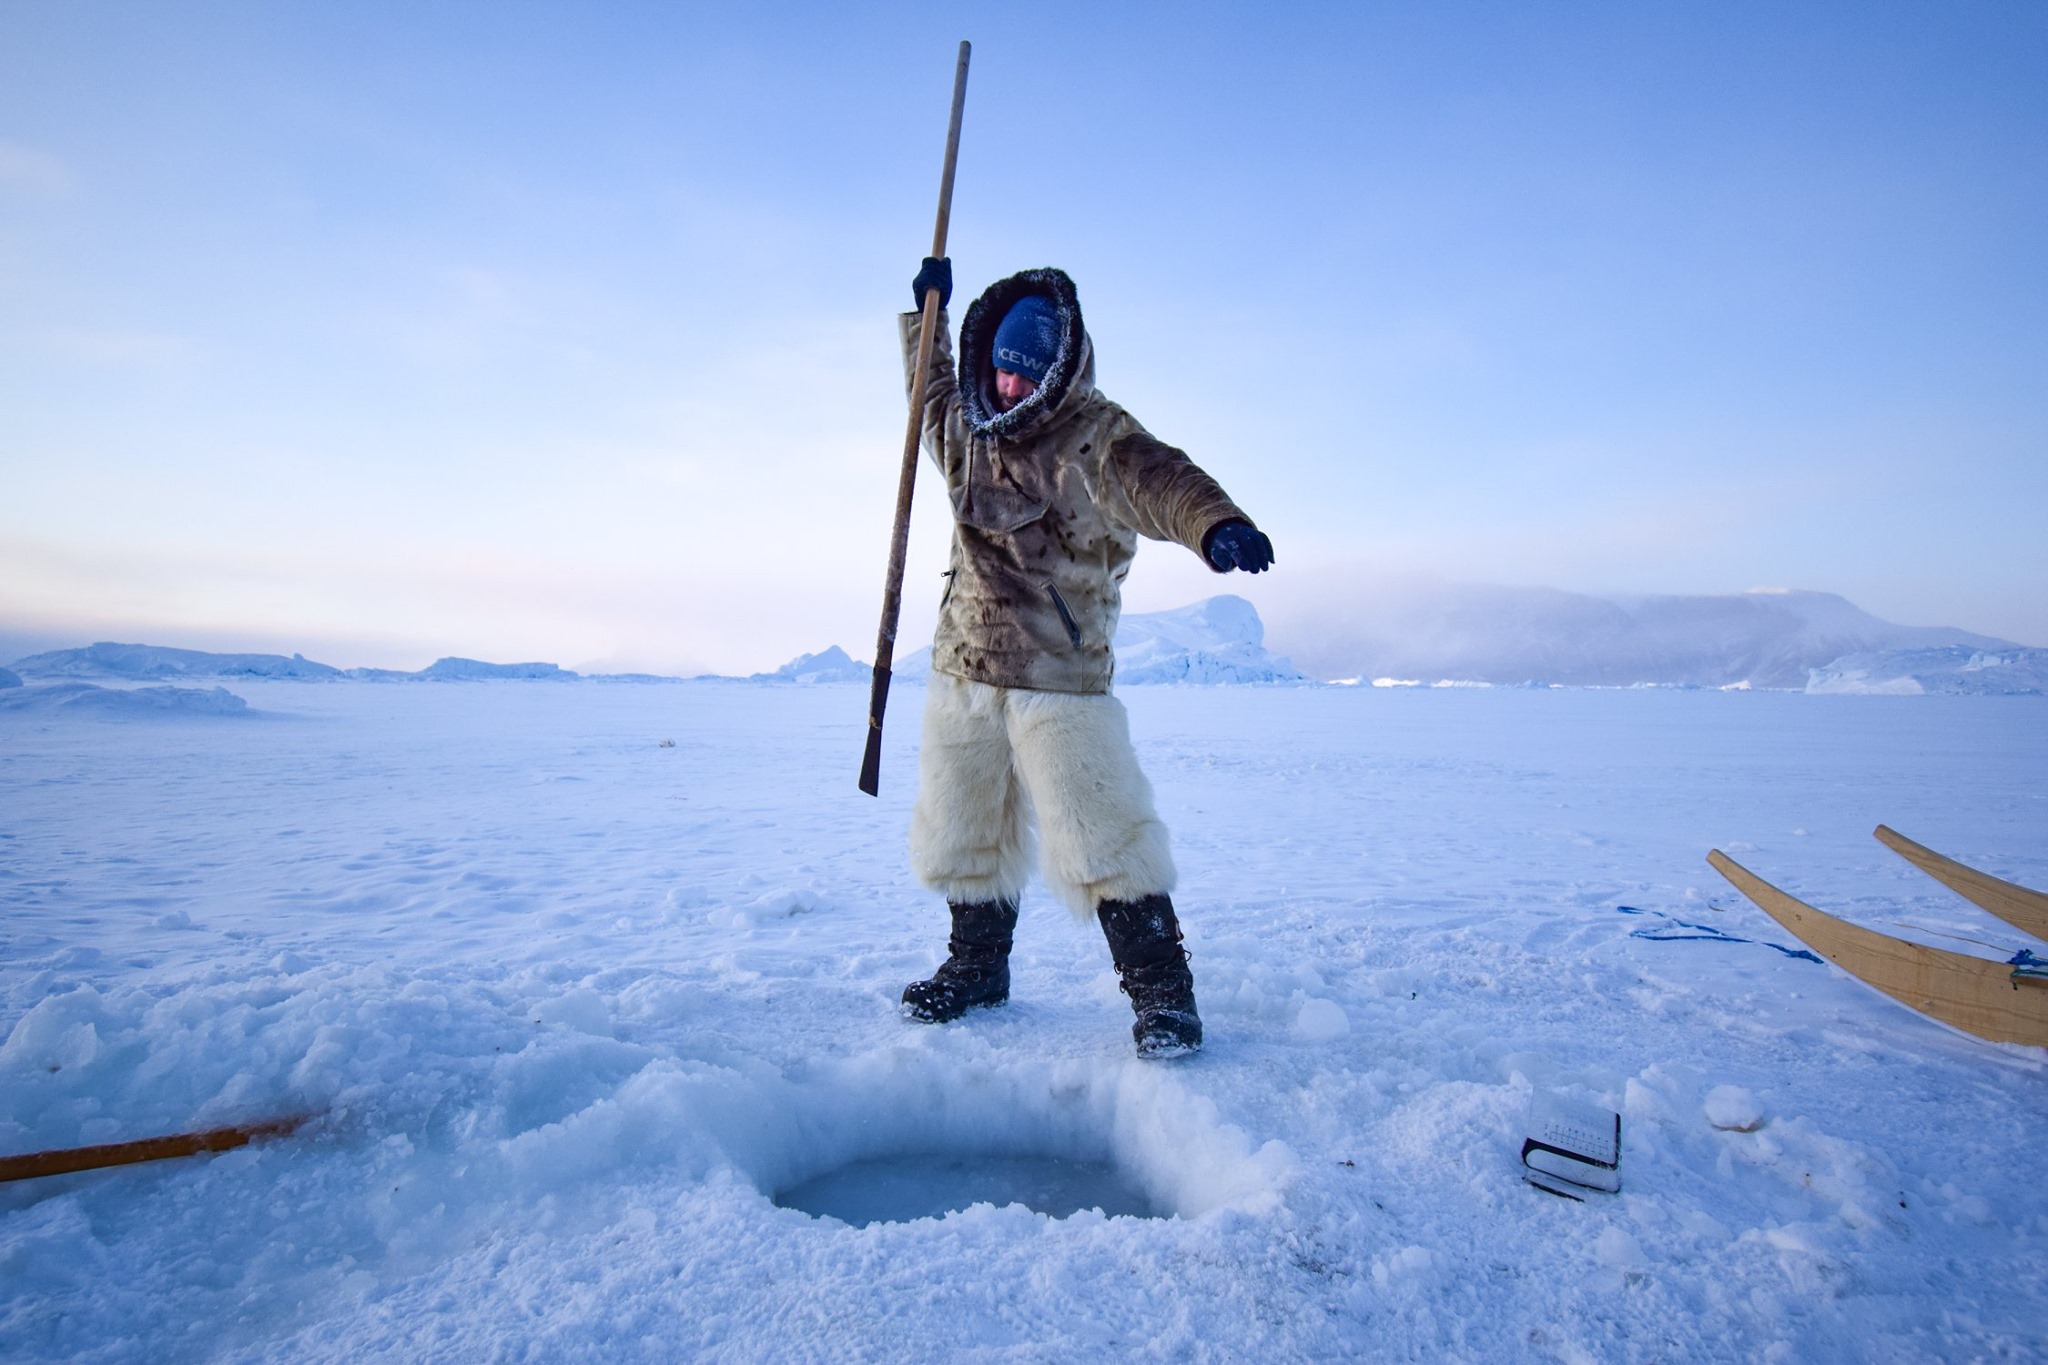 uploads/anh-dienden-dulich/greenland/catching-fish-in-the-arctic-way.jpg